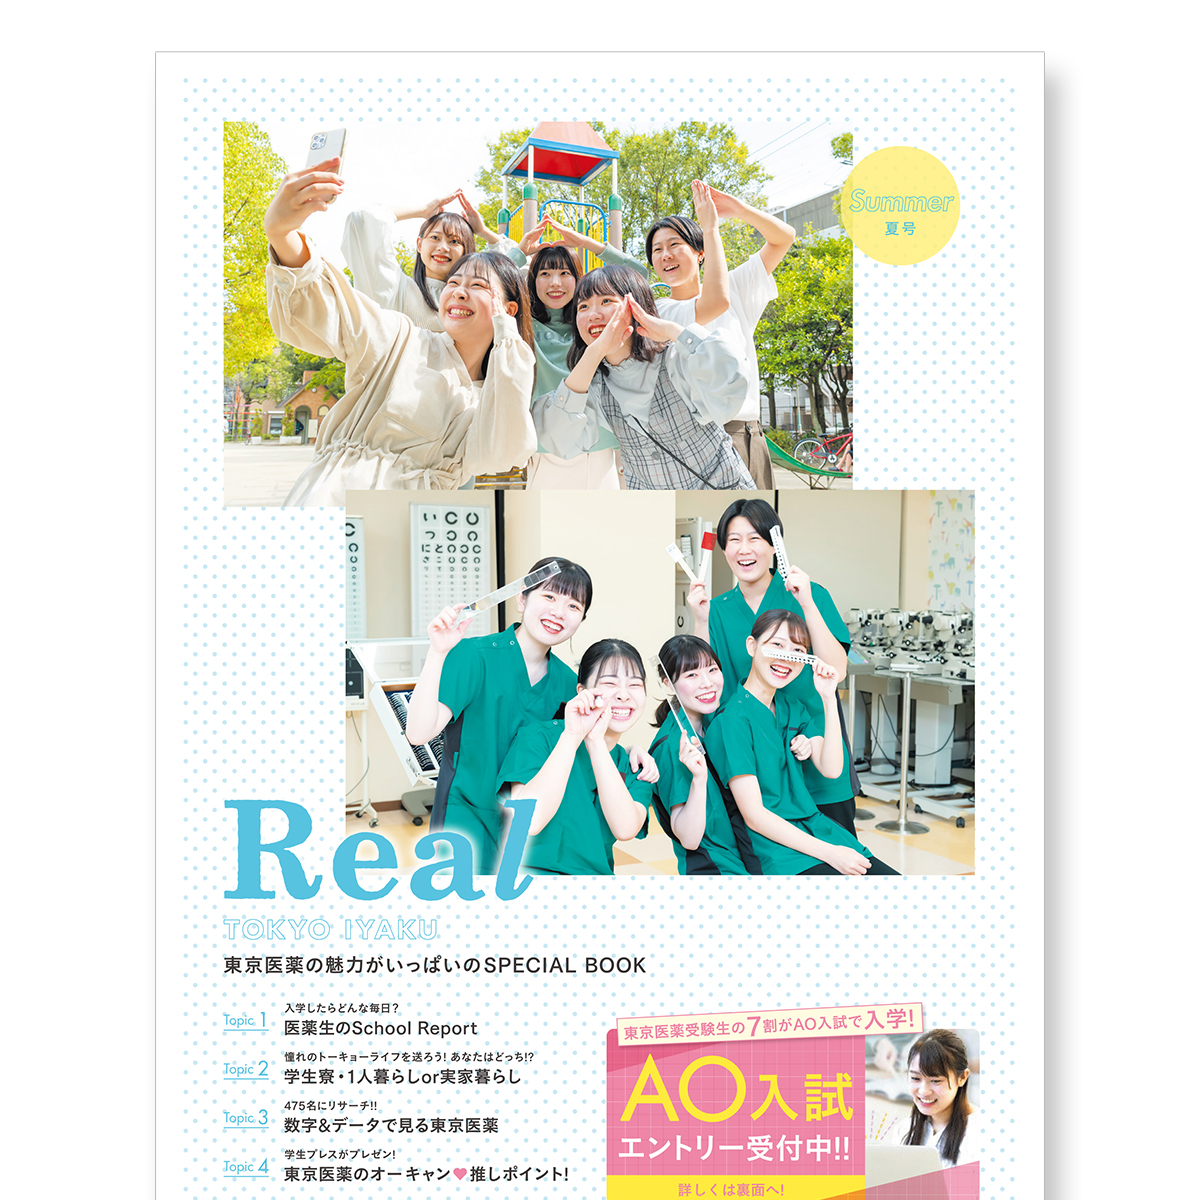 東京医薬の魅力がいっぱいのSPECIAL BOOK「Real TOKYO IYAKU【夏号】」